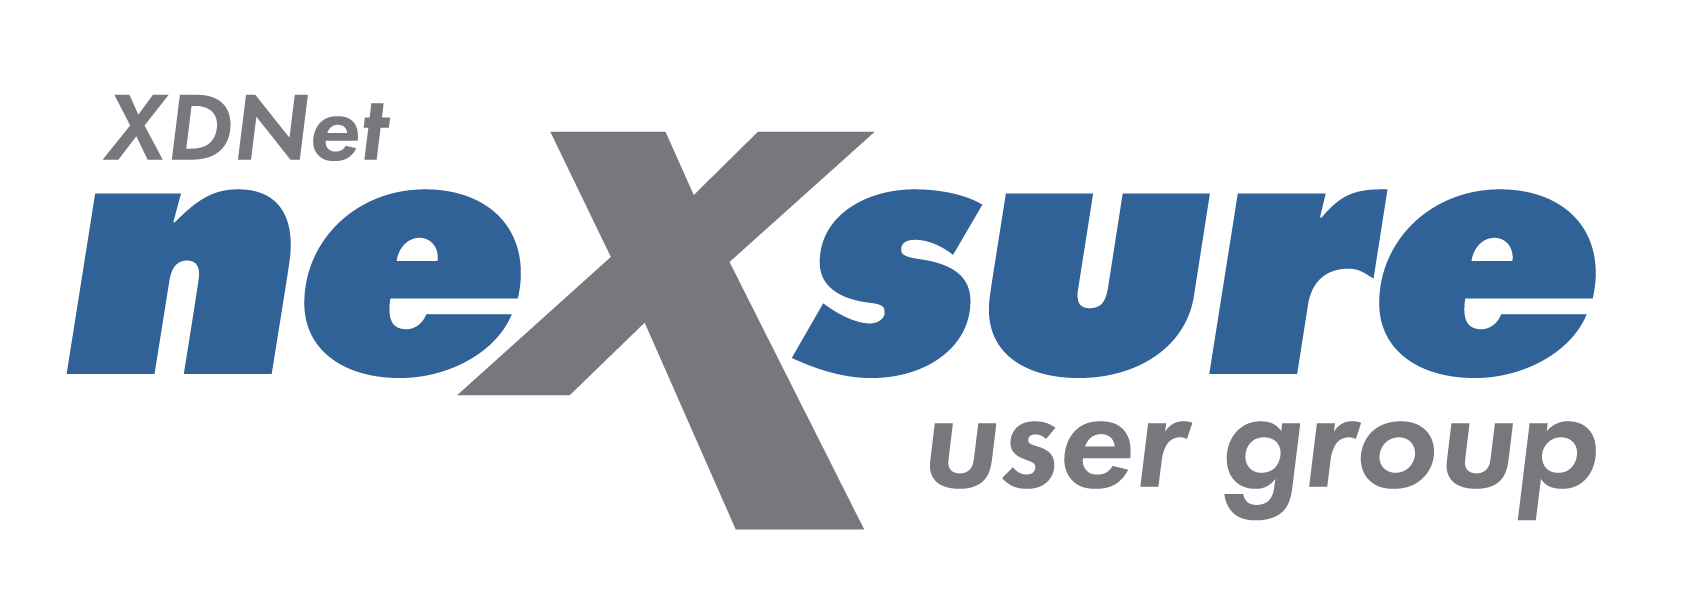 XDNet Nexsure User Group Logo